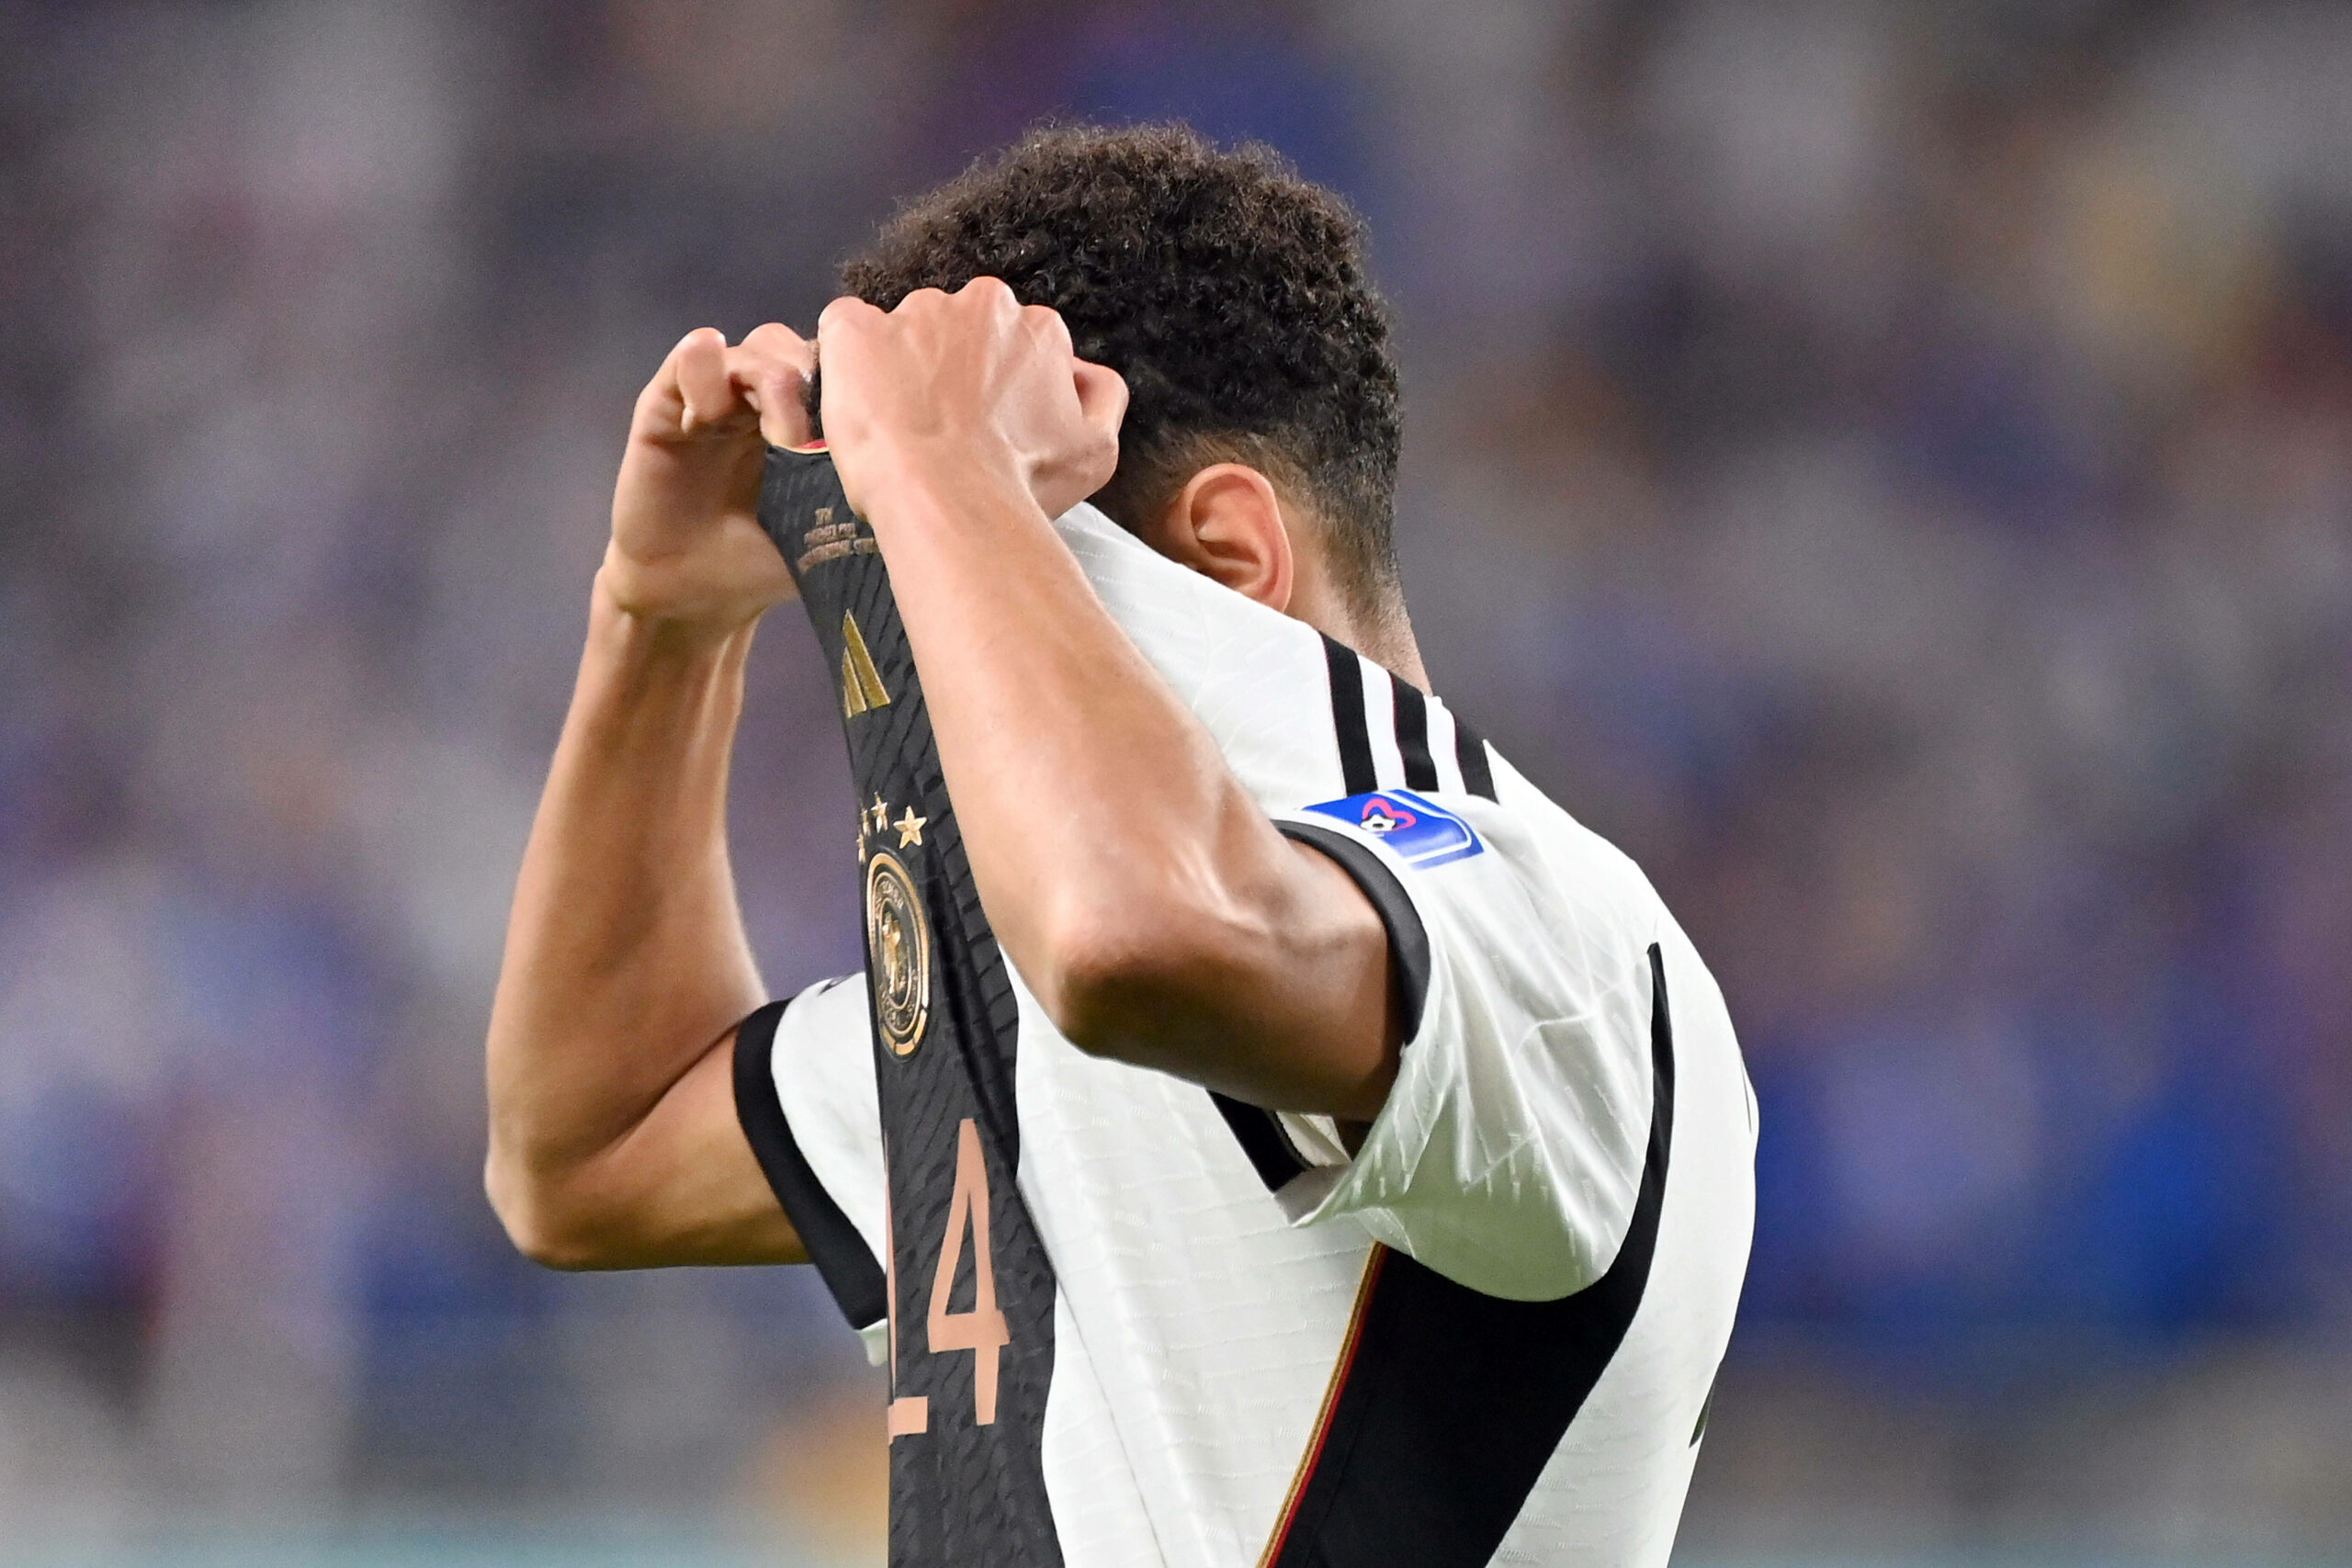 Jamal Musiala war nach der Auftaktniederlage gegen Japan frustriert. Sie könnte dem DFB-Team noch teuer zu stehen kommen.